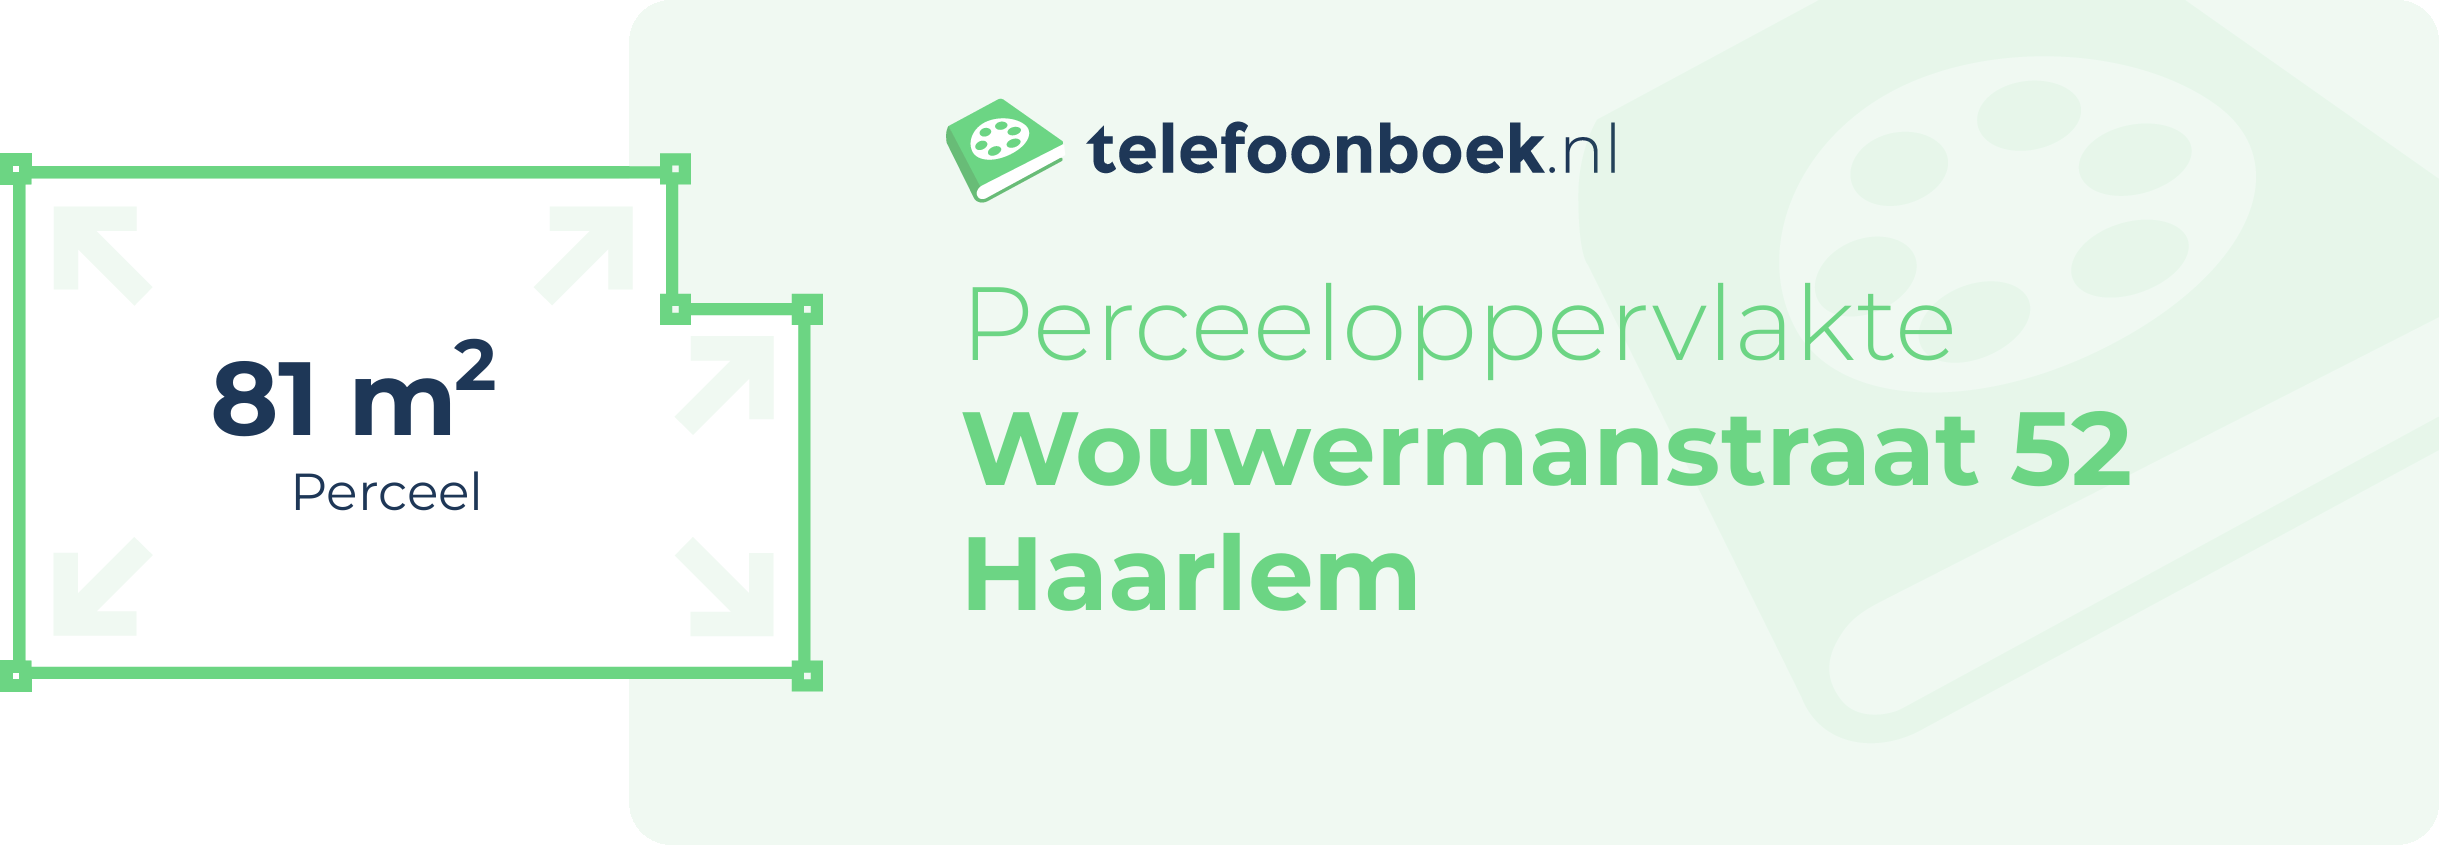 Perceeloppervlakte Wouwermanstraat 52 Haarlem